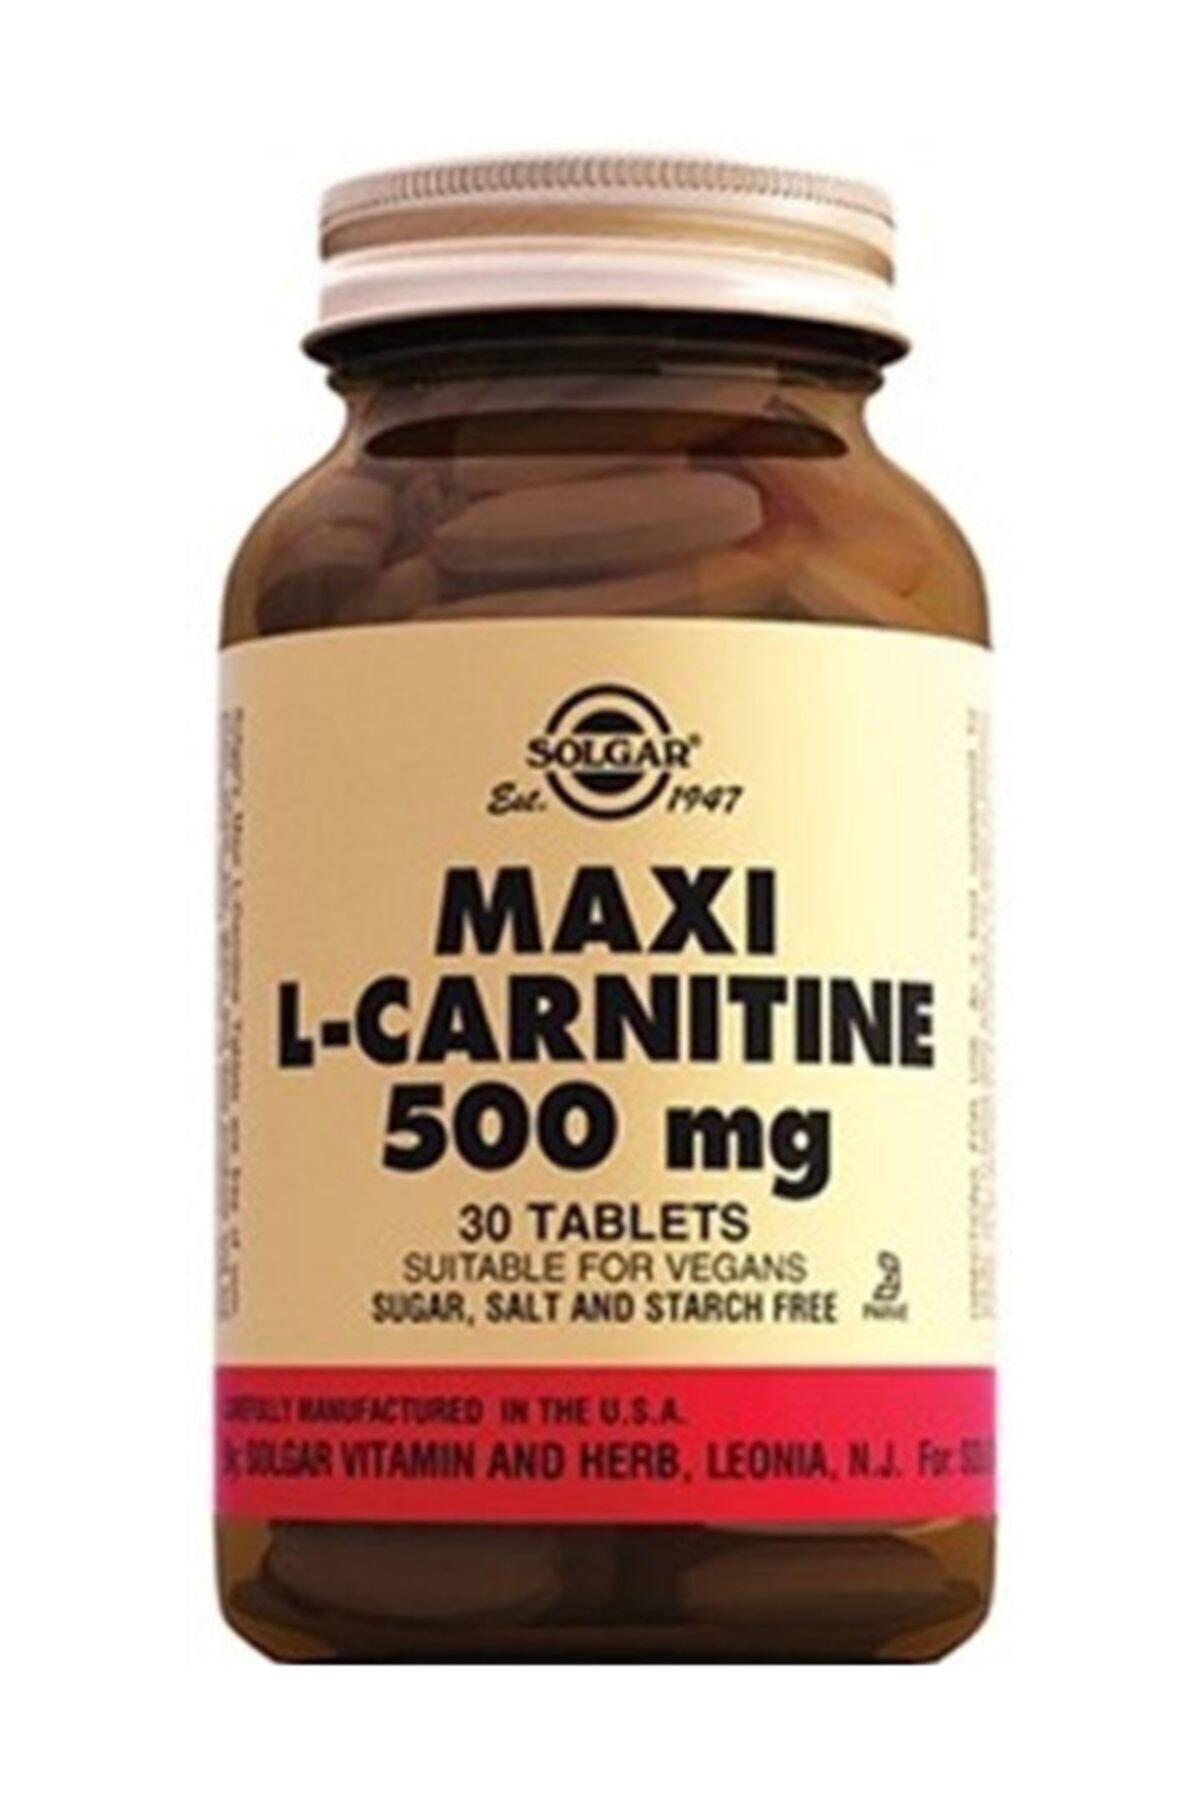 Solgar Maxi L-carnit 500 mg 30 Tb